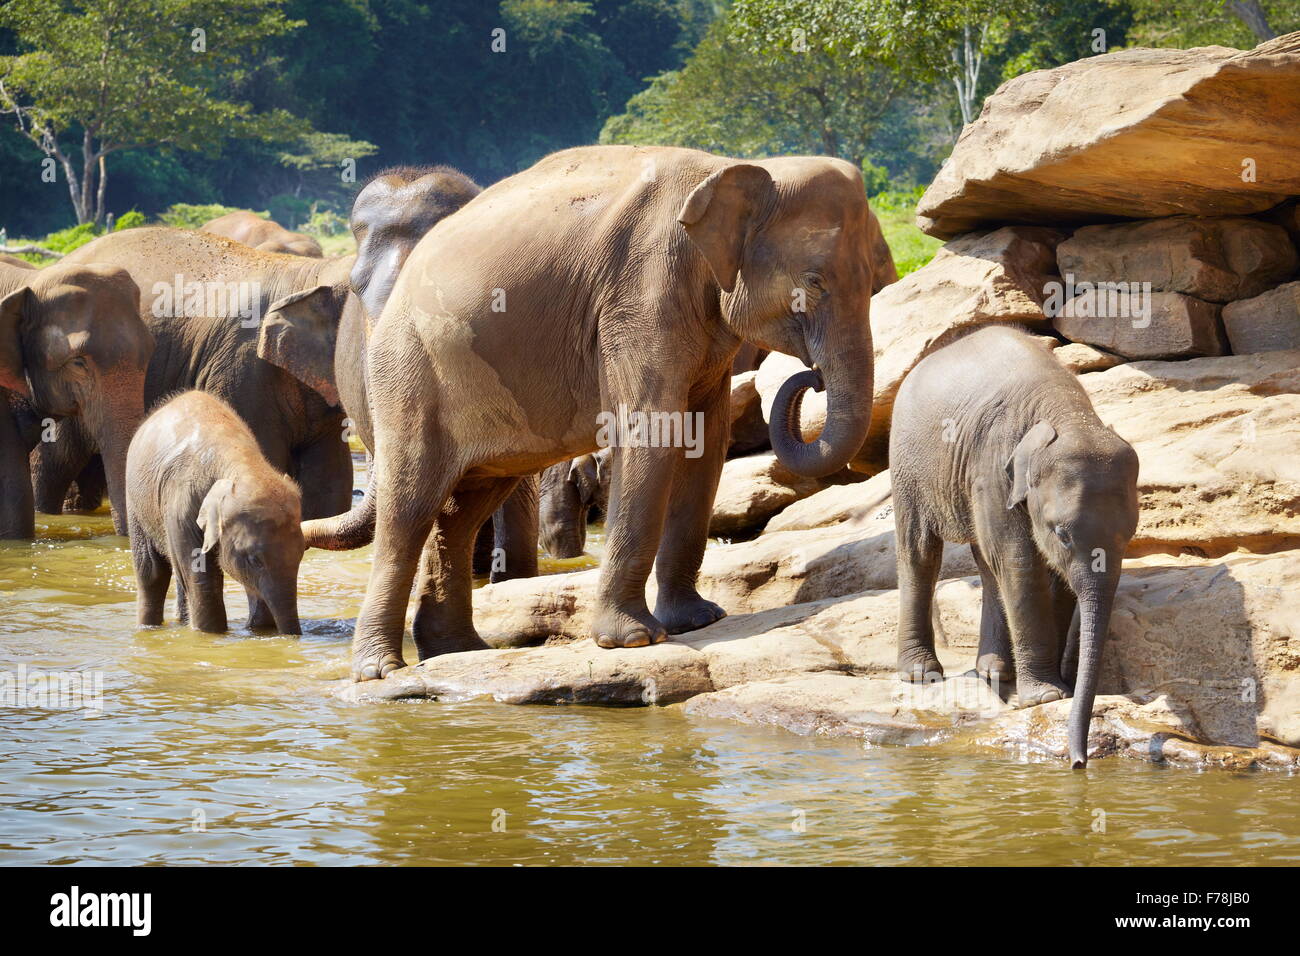 Sri Lanka - éléphant de Pinnawela orphelinat pour éléphants d'Asie sauvages Banque D'Images